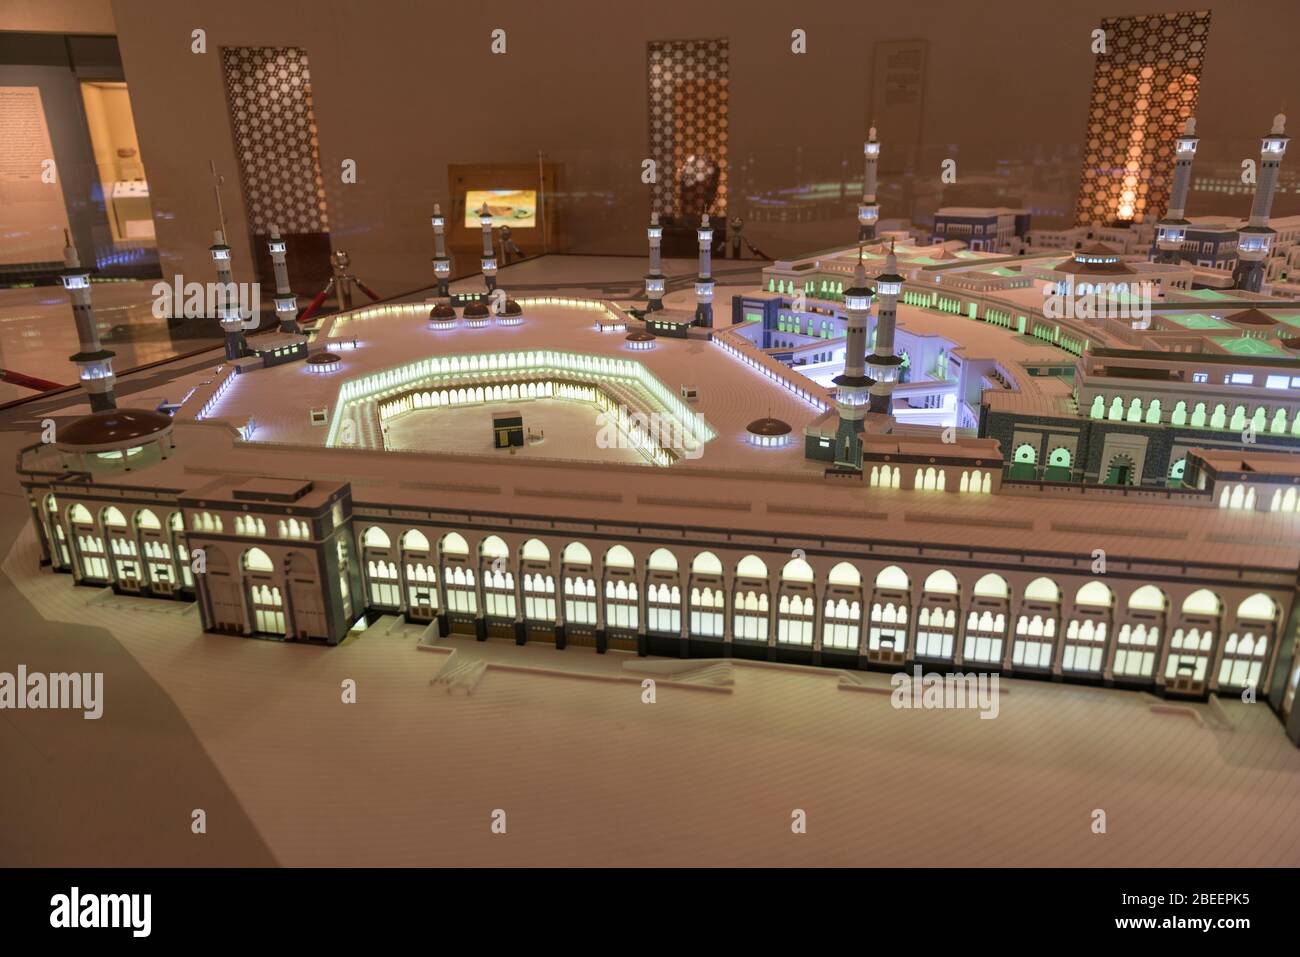 Modèle à grande échelle de la Grande Mosquée de la Mecque exposé au Musée national de Riyad en Arabie Saoudite. Banque D'Images